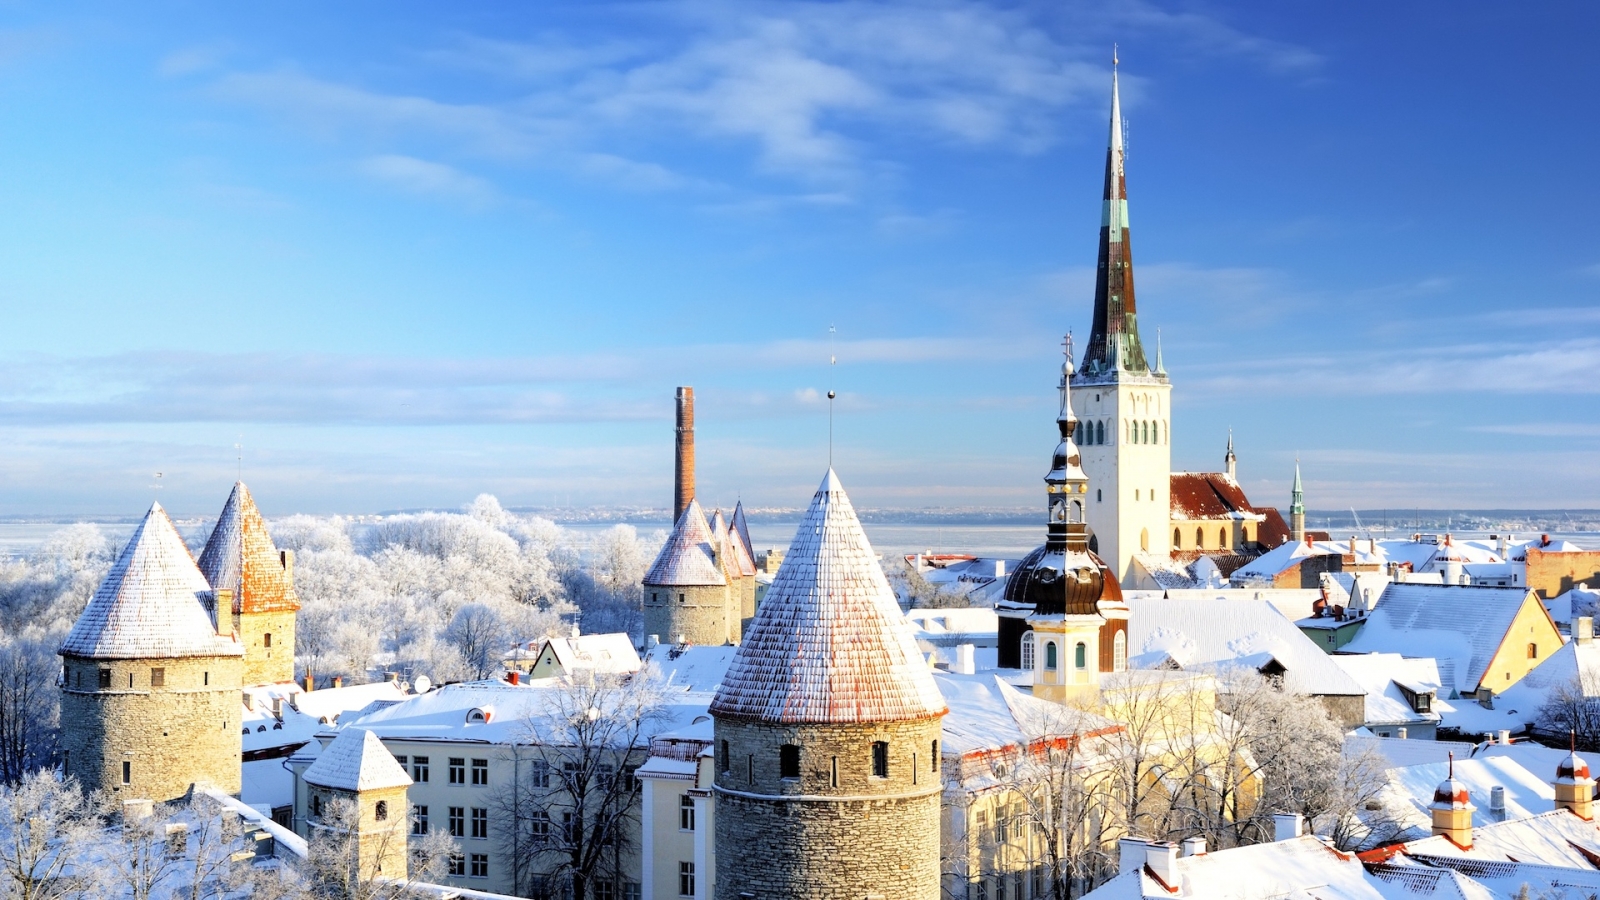 ciudad de Tallin.  Estonia.  Nieve en los árboles en invierno